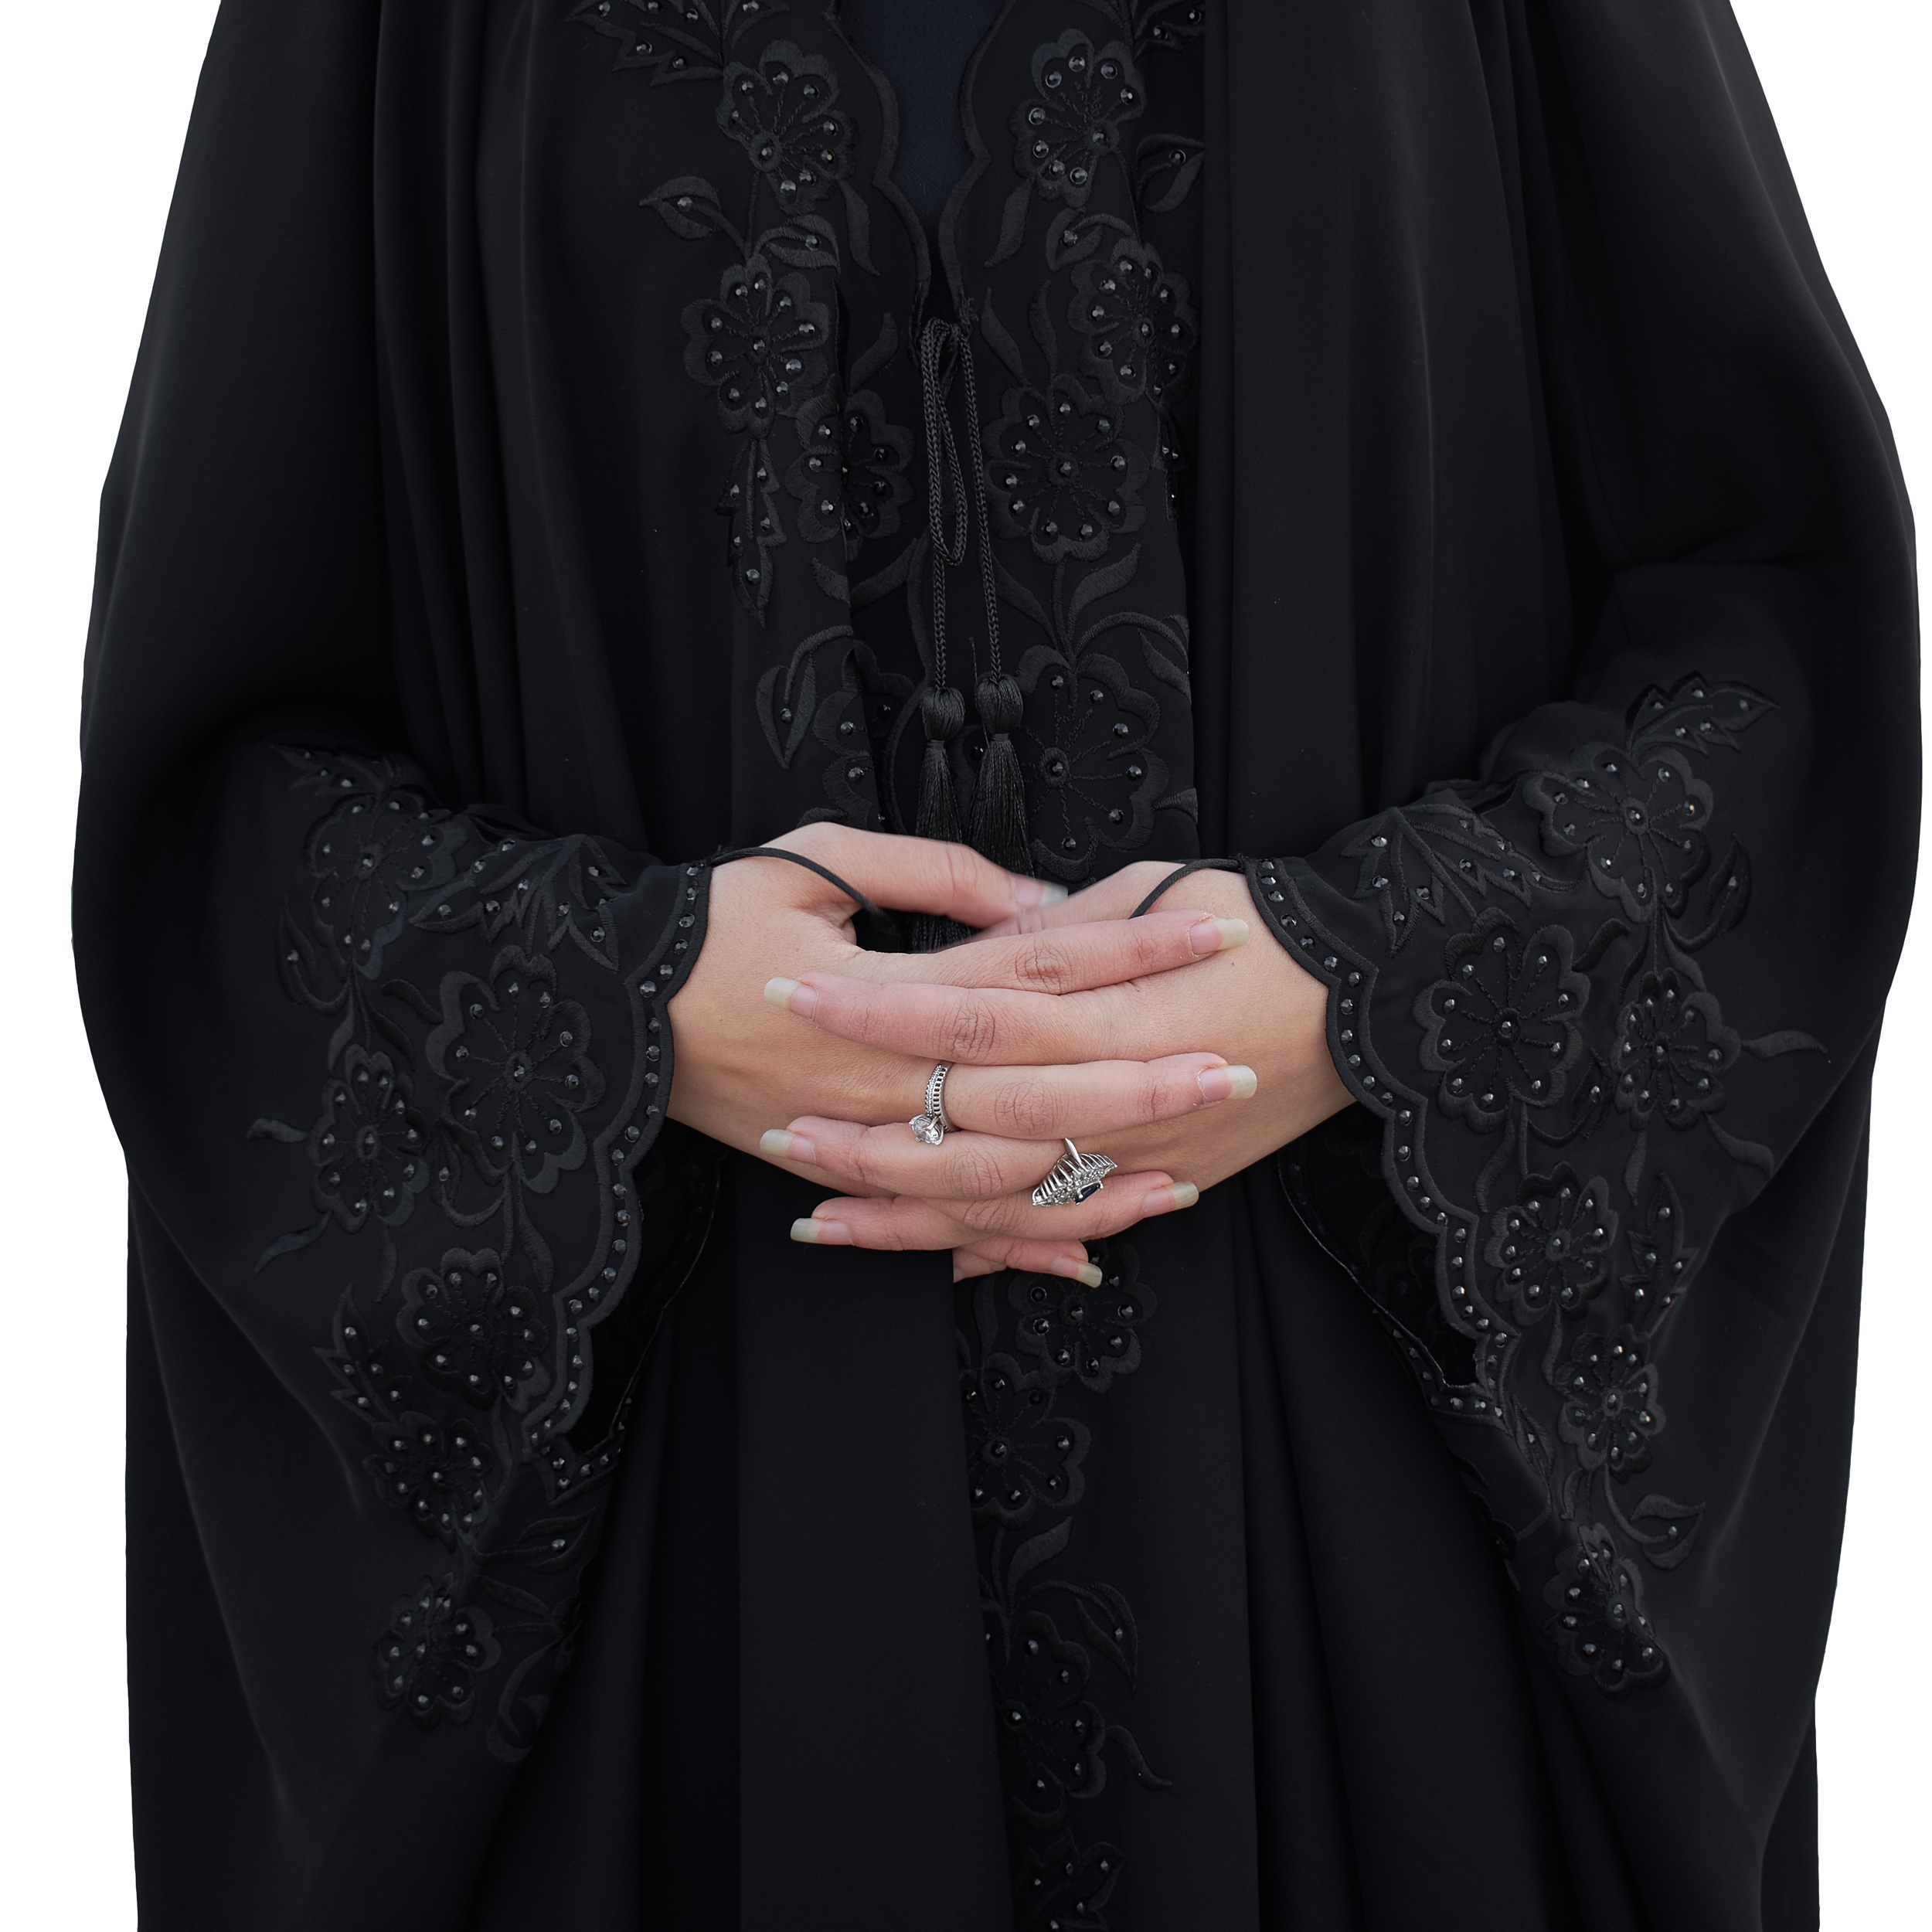 چادر حجاب فاطمی مدل سما کد Kan 1049